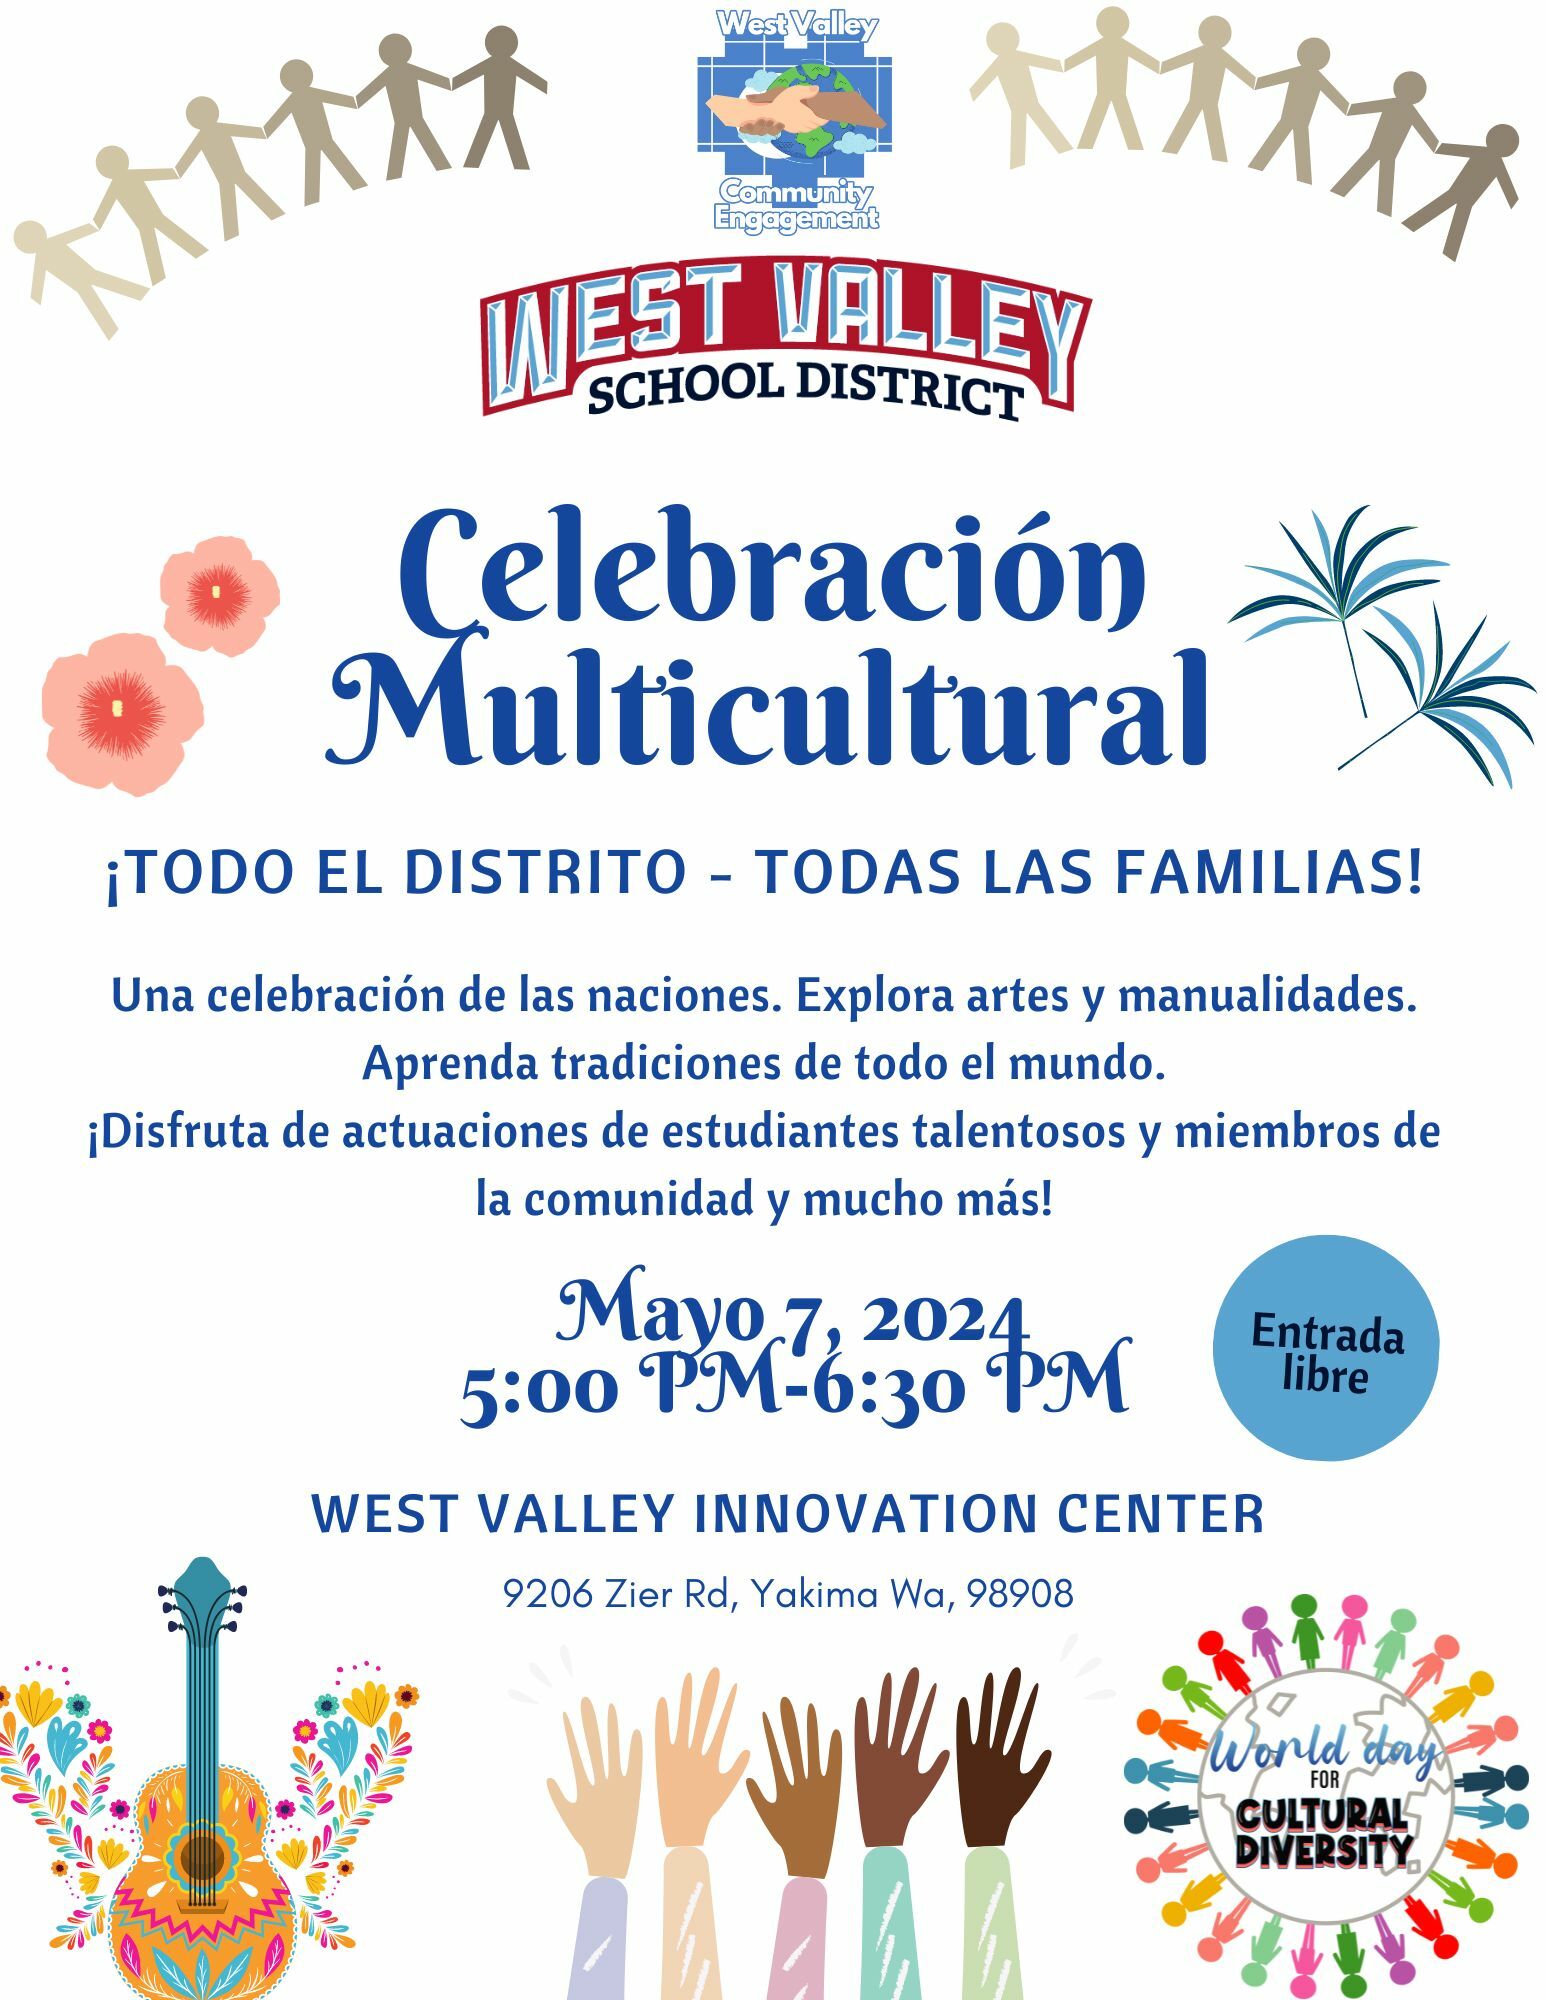 Multicultural Celebration flyer Spanish